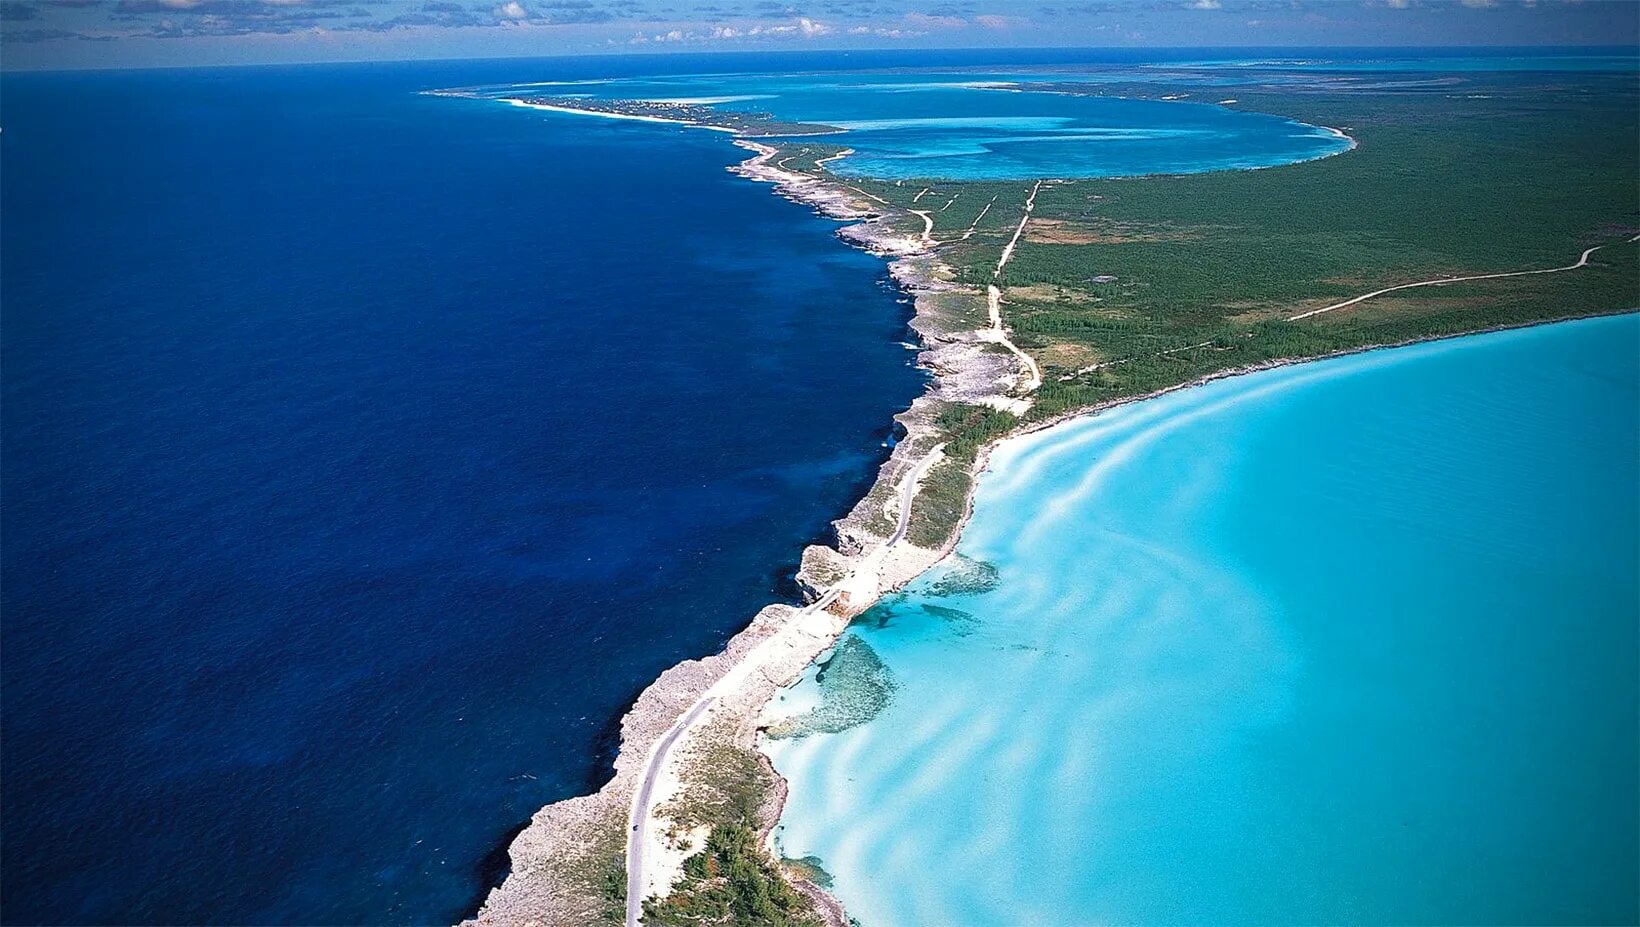 Суша тихого океана. Эльютера Багамы. Элеутера (Багамские острова). Карибское море Атлантический океан. Остров Эльютера.